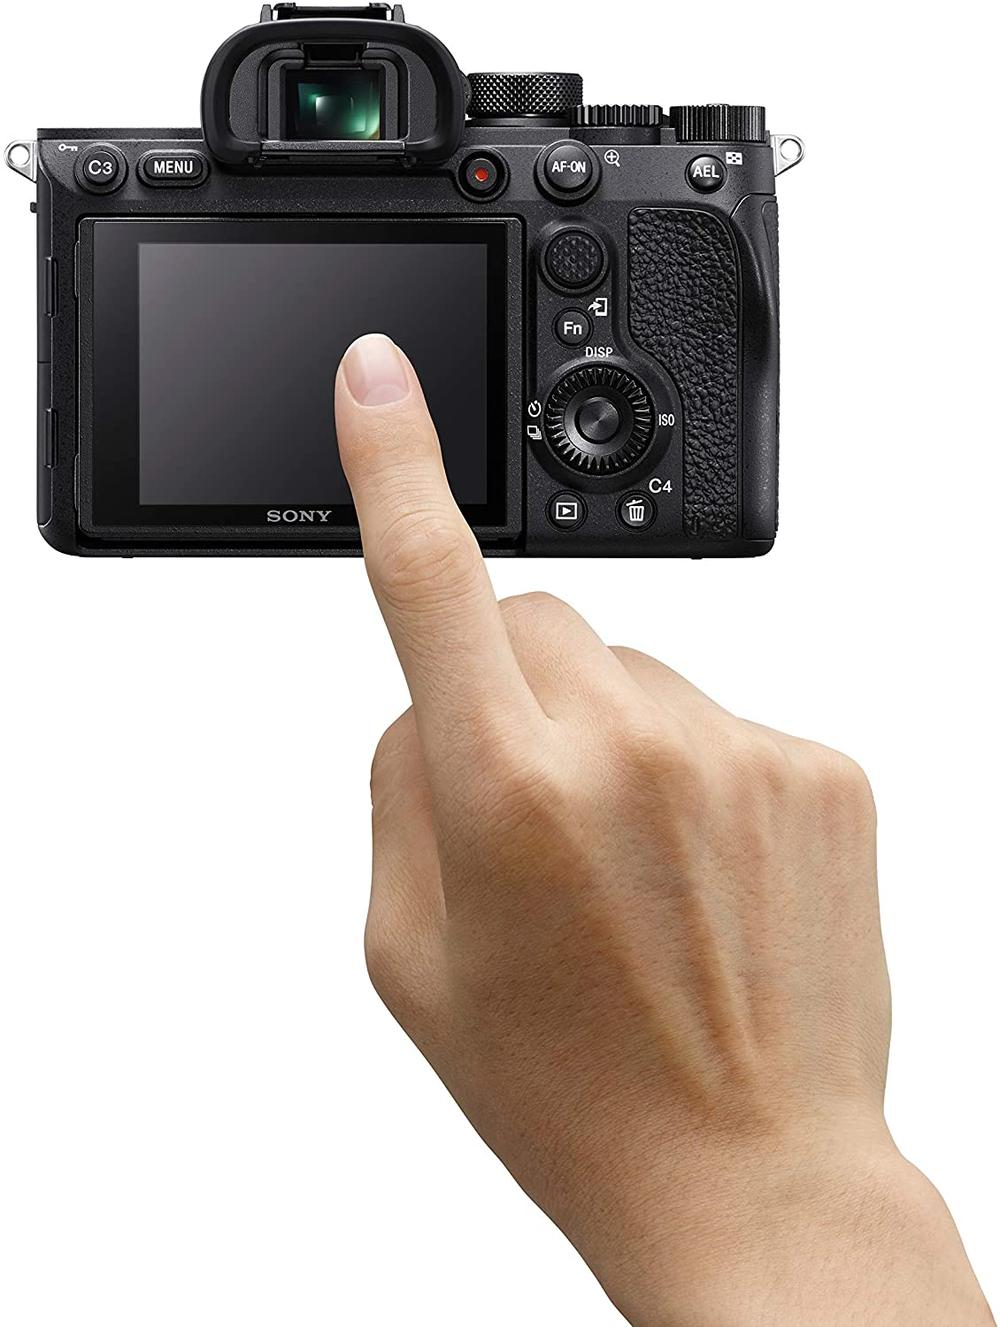 سوني 7M4 ألفا  كاميرا  ذات الإطار الكامل الهيكل فقط  - Modern Electronics